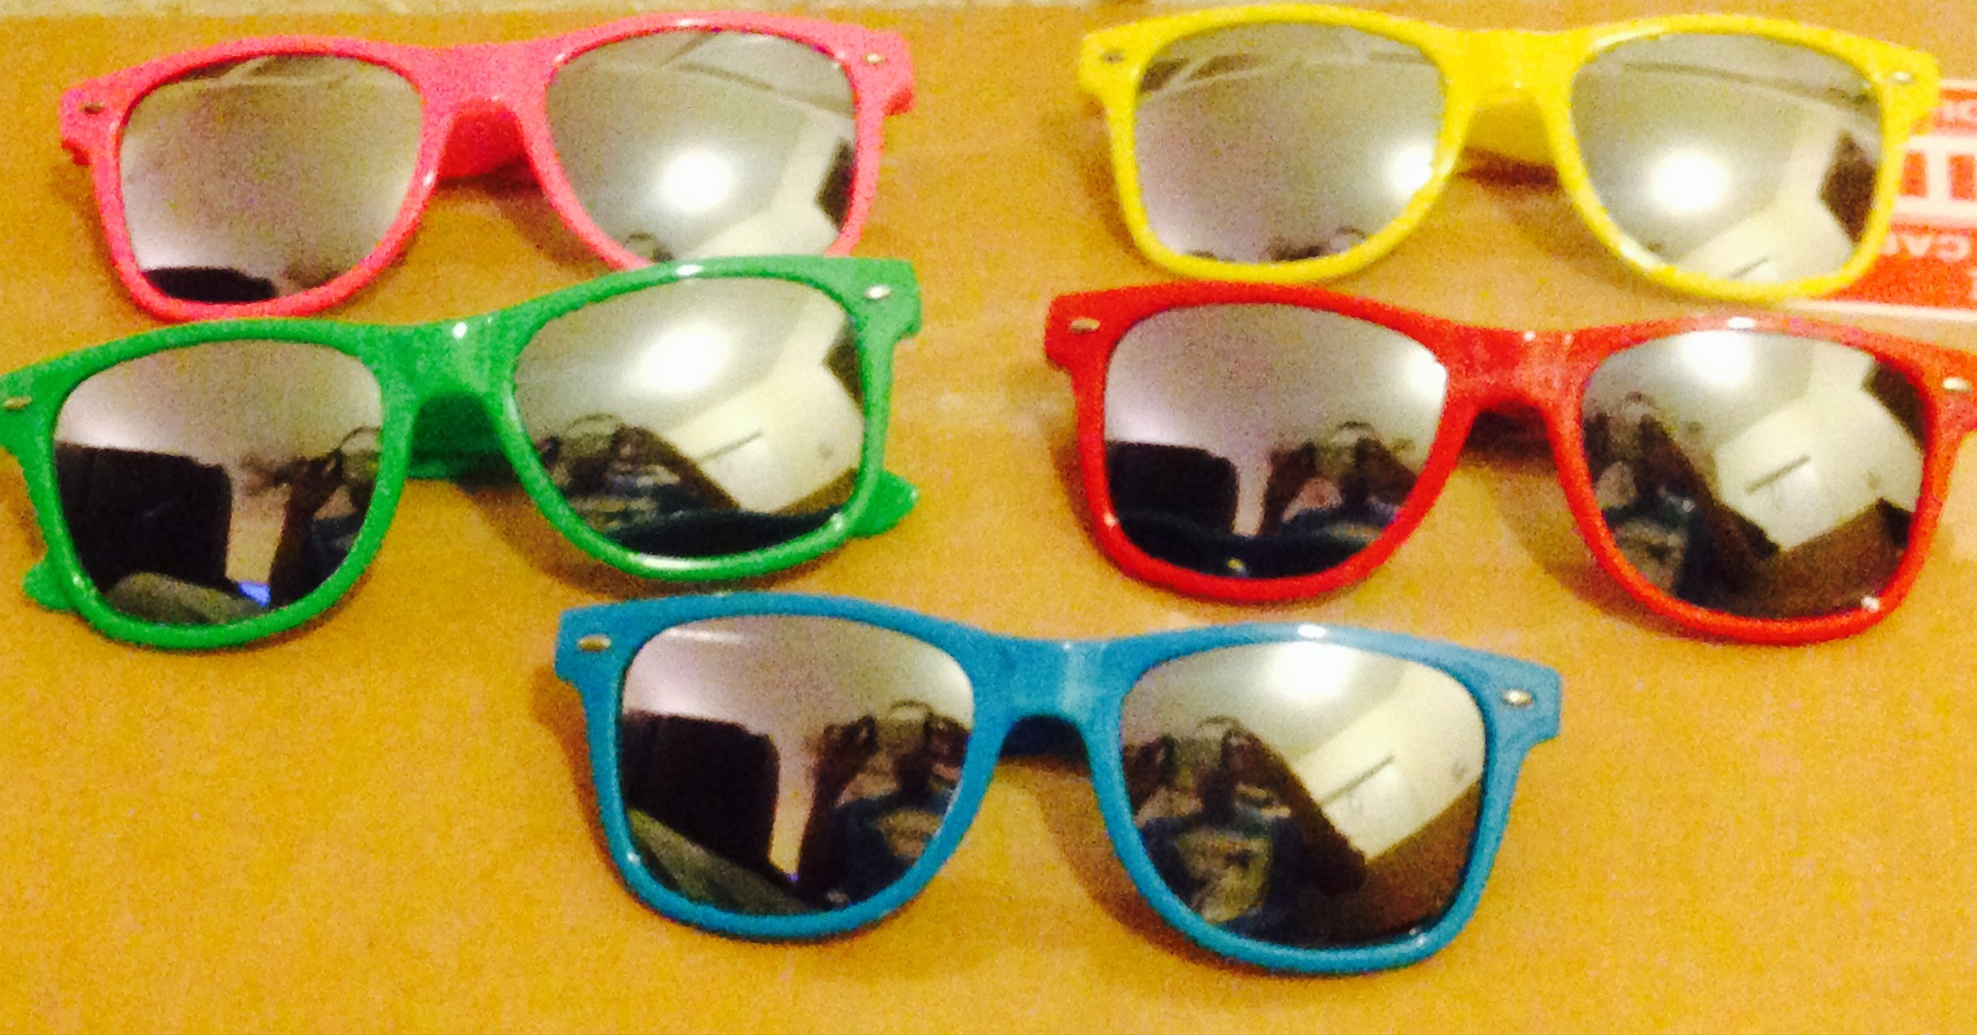 mirror-lens-promo-sun-glasses.jpg